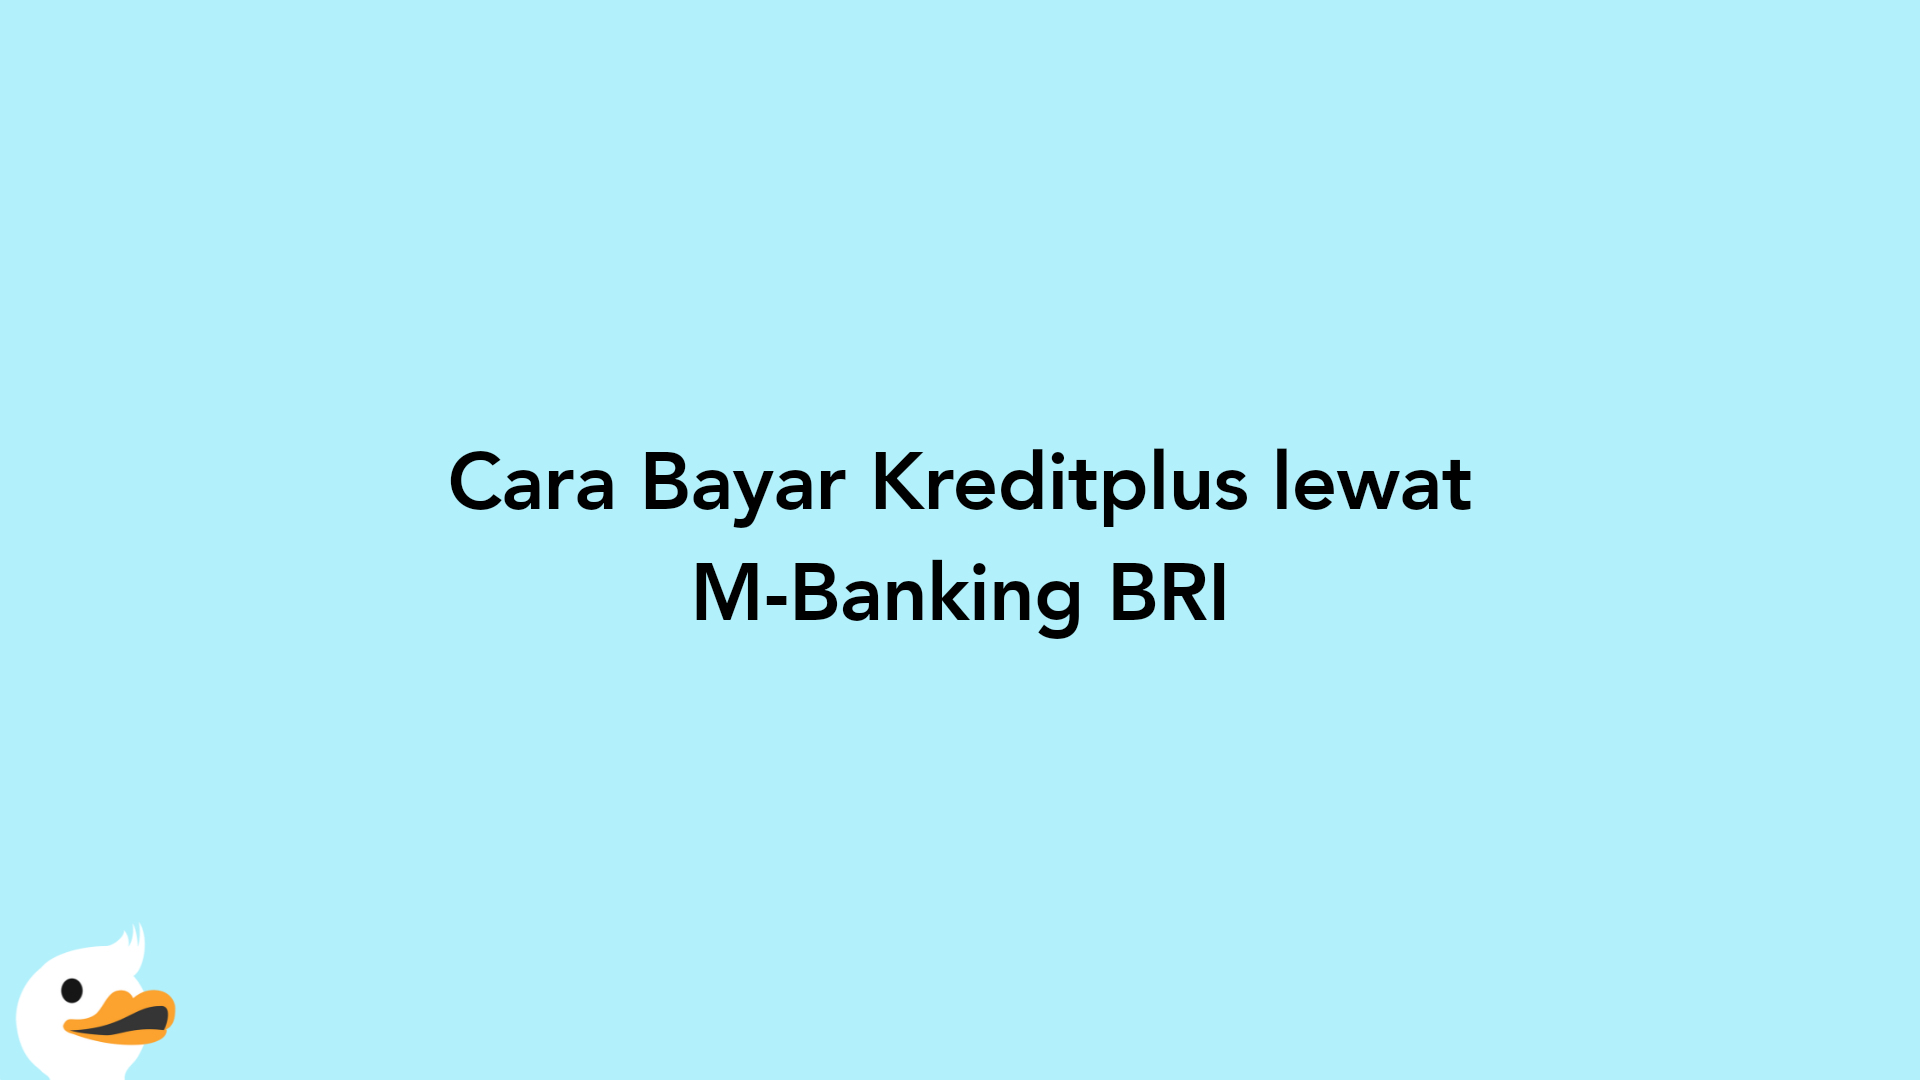 Cara Bayar Kreditplus lewat M-Banking BRI